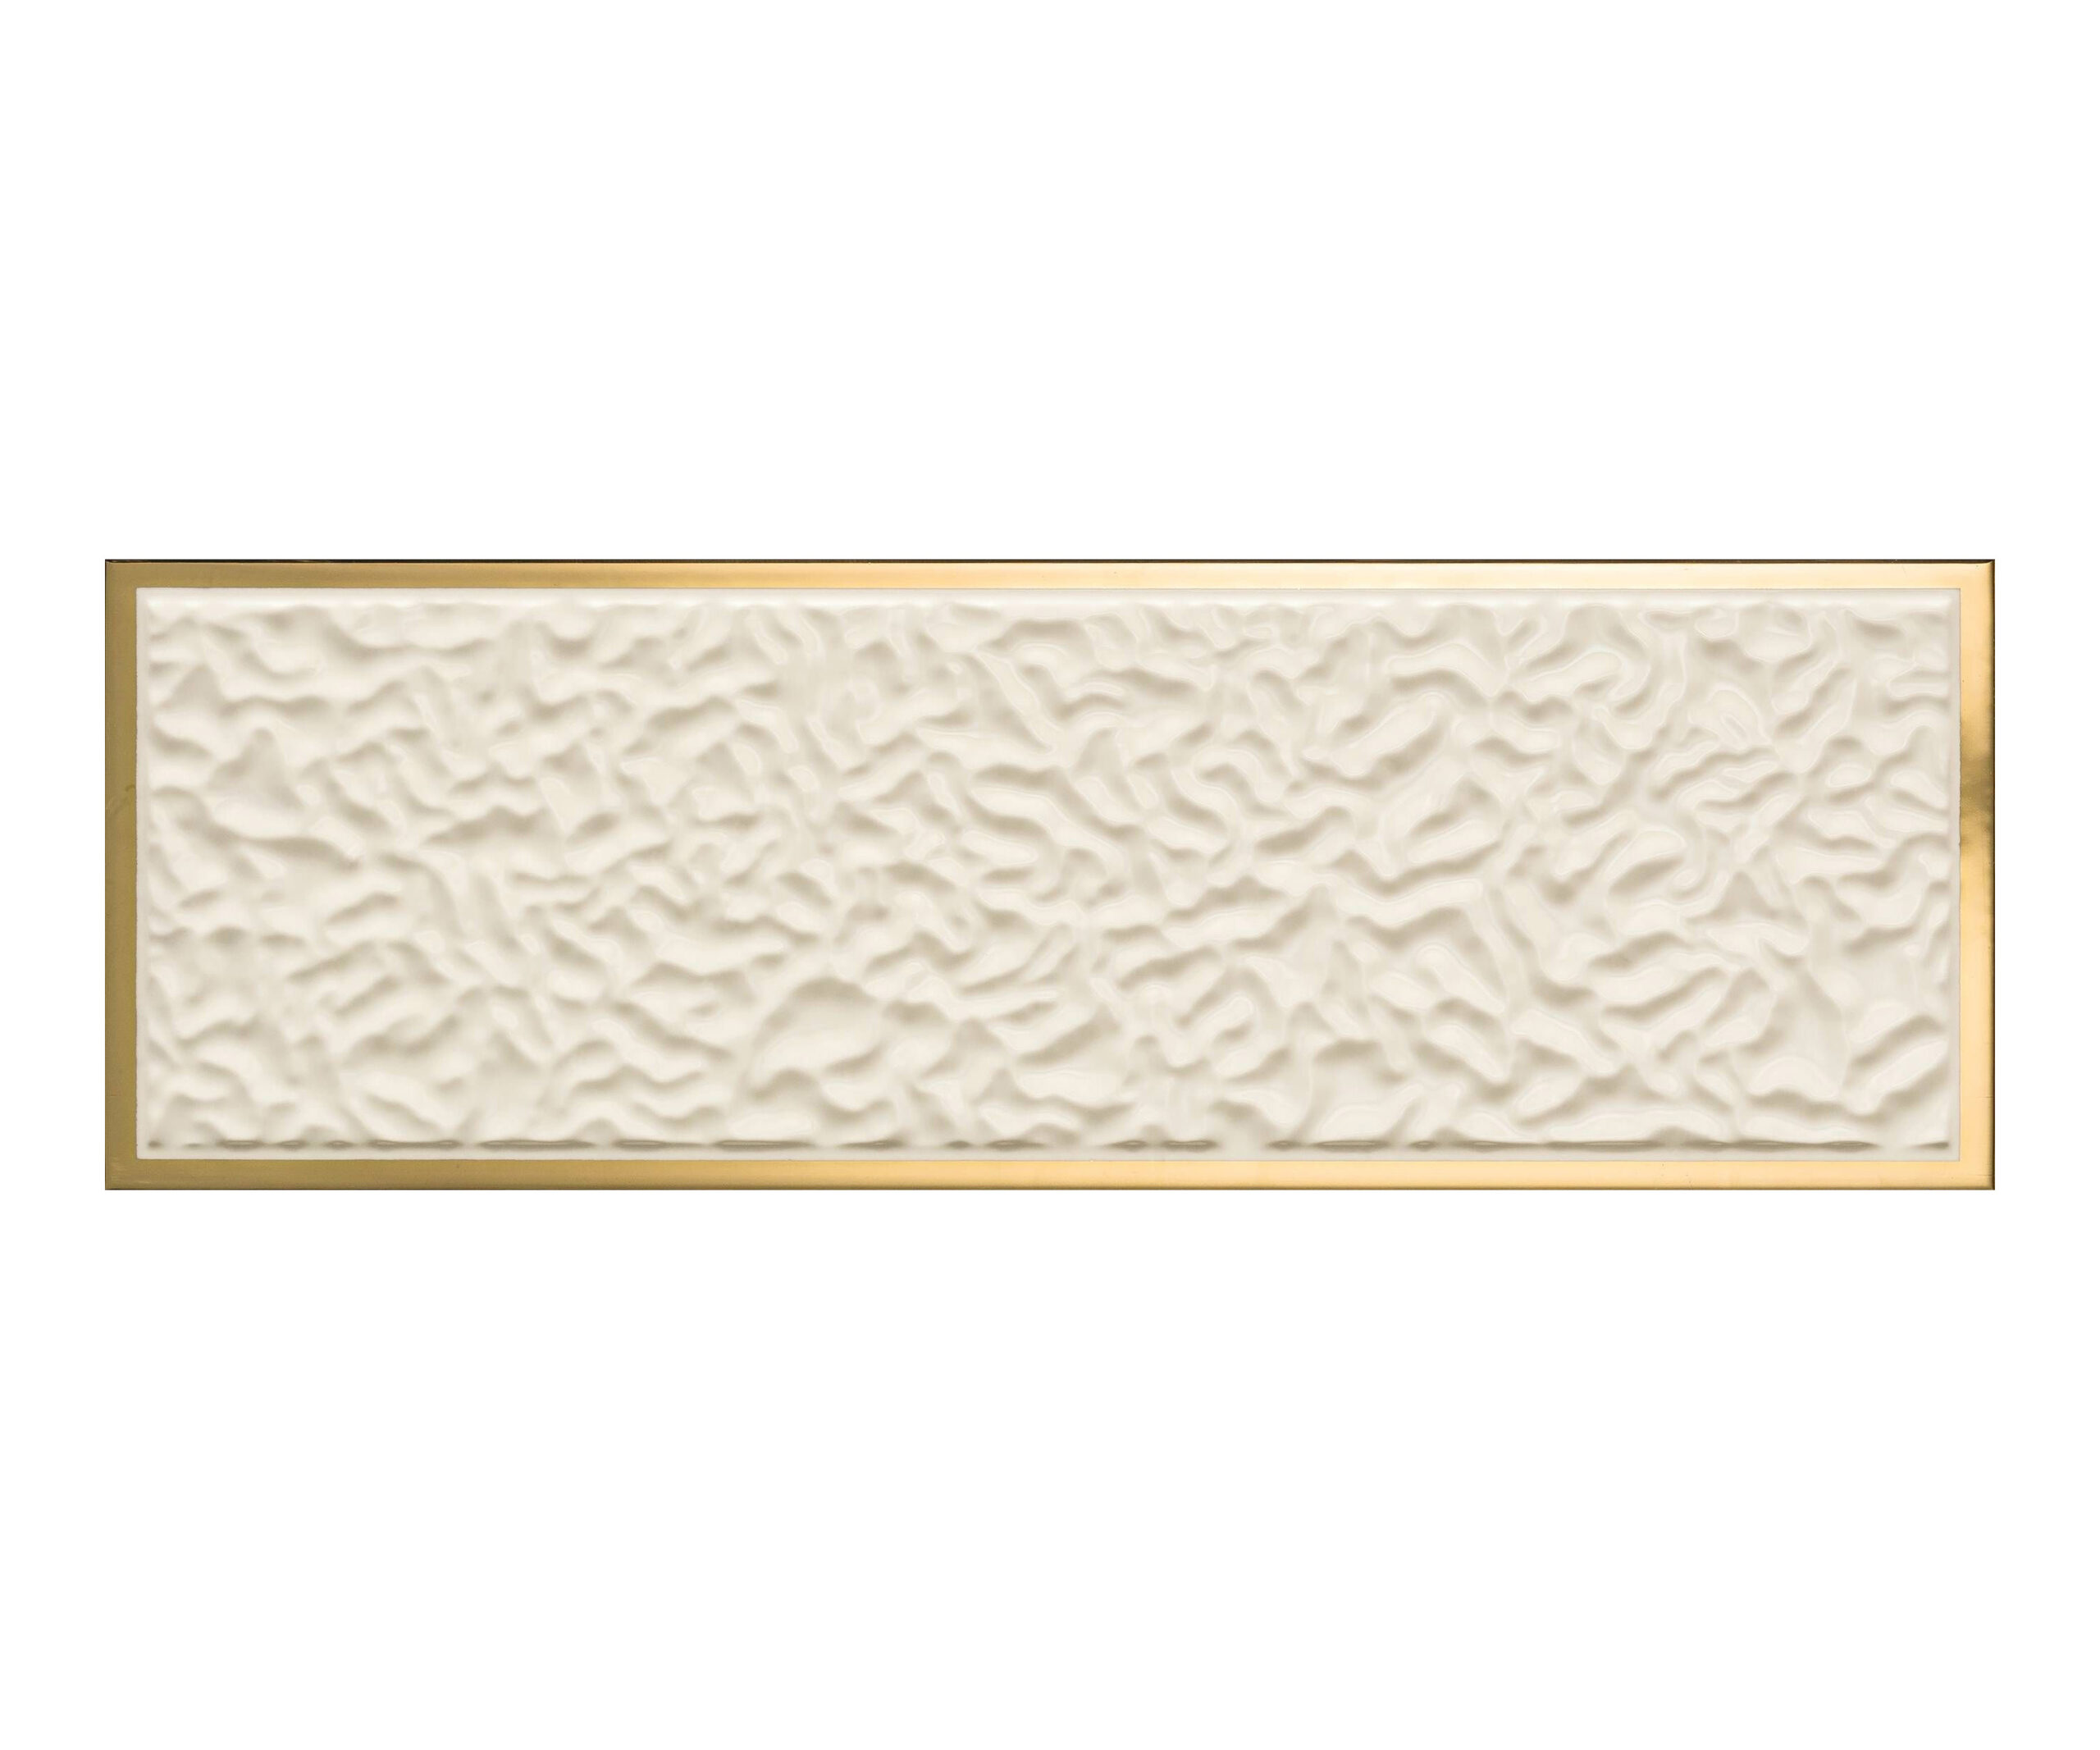 Versace Gold Crema Acqua Corn.Oro 25x75_0